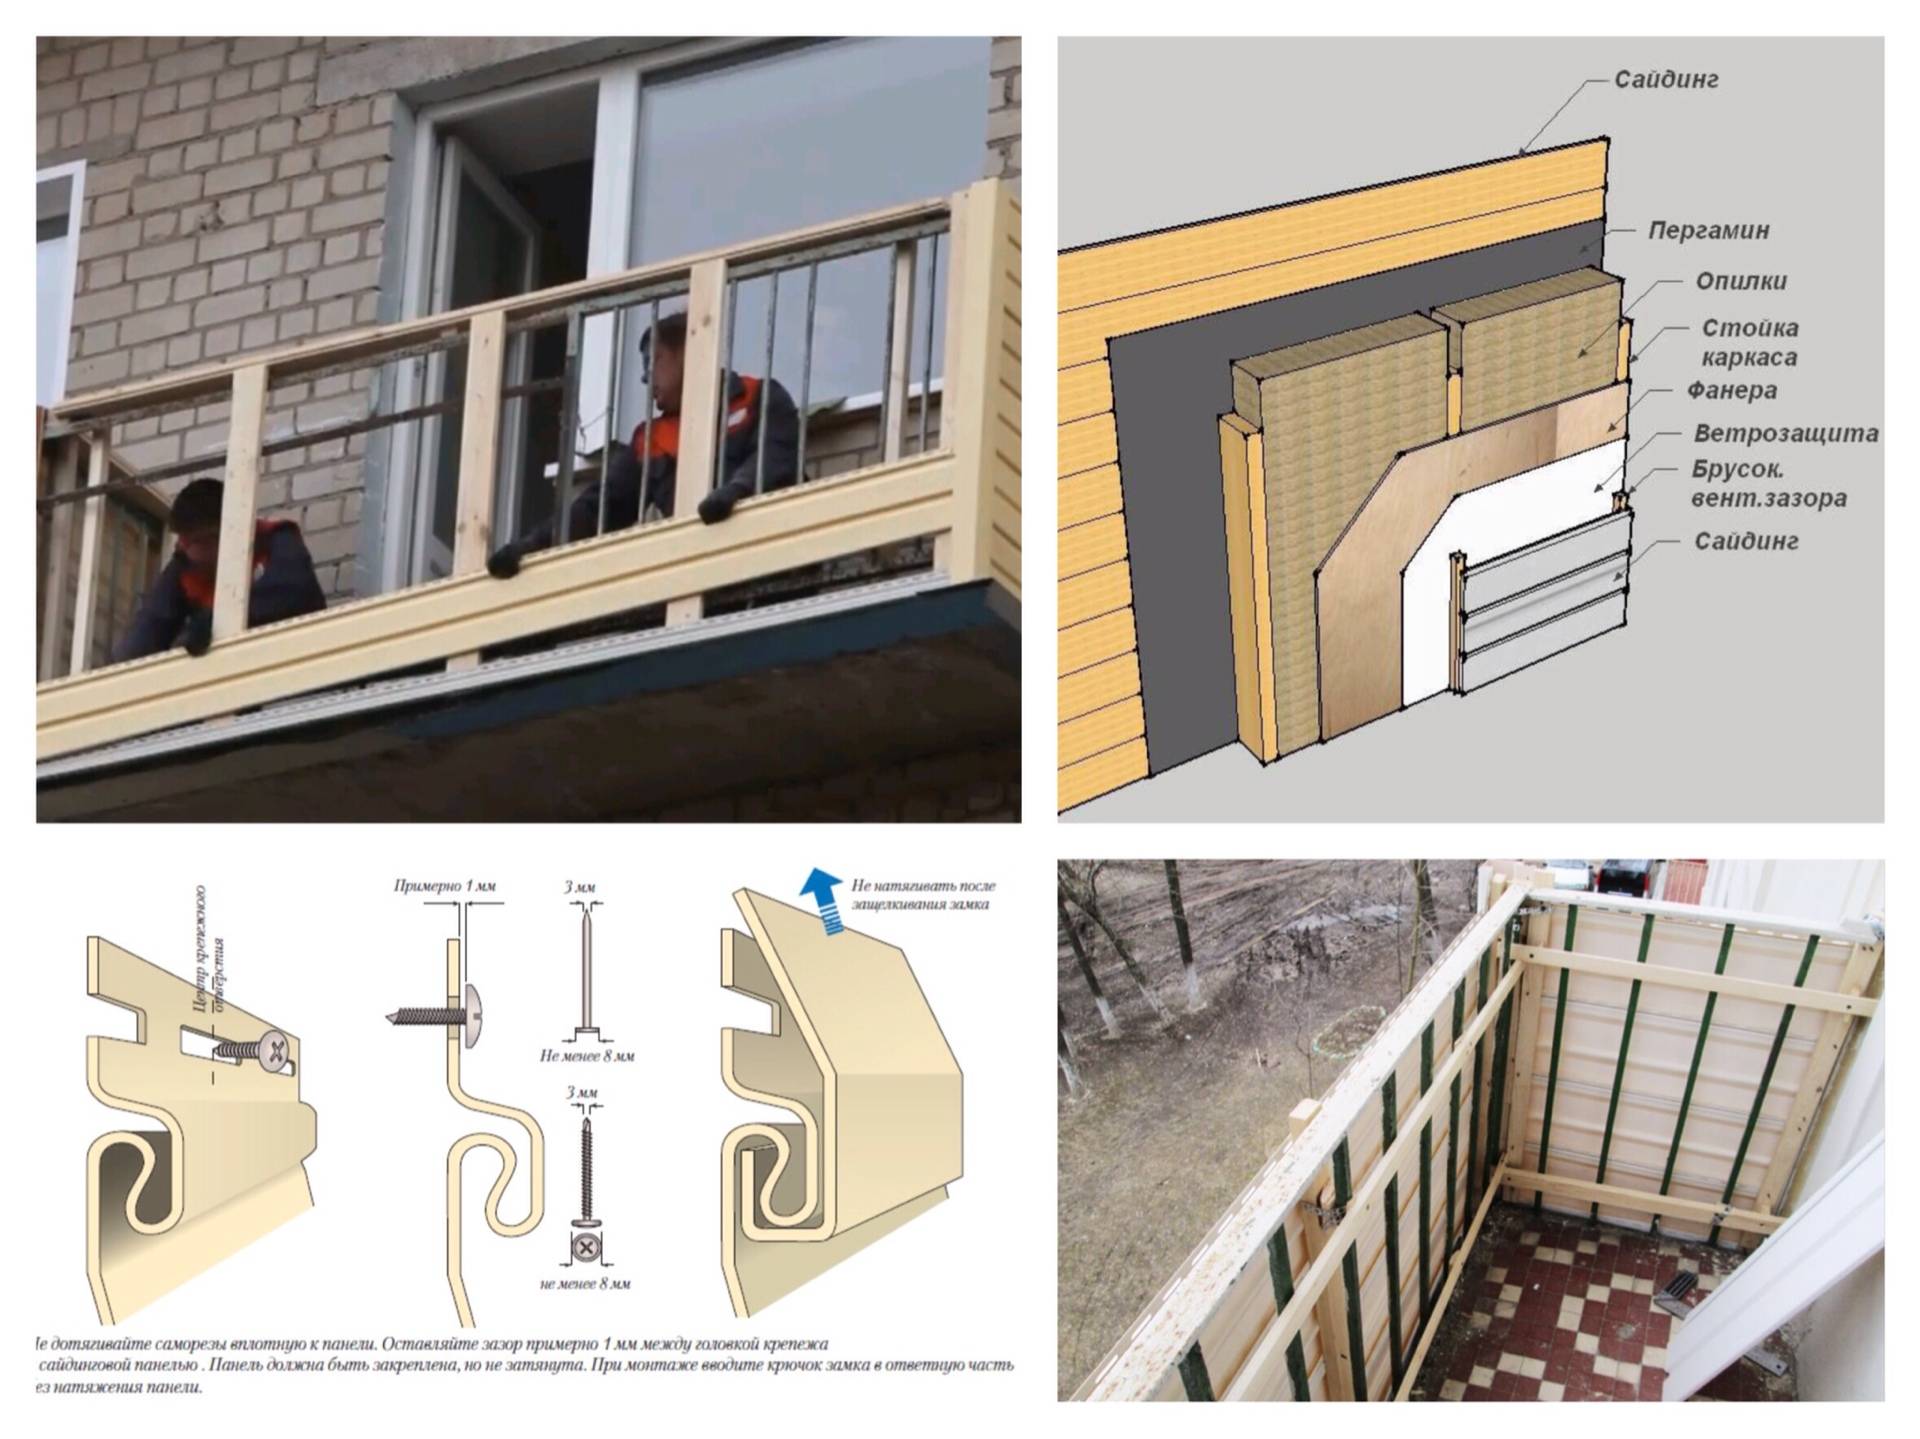 Как обшить балкон сайдингом, а также сравнение наружной отделки балкона различными материалами, какая облицовка лучше, фото готовых фасадов балконов